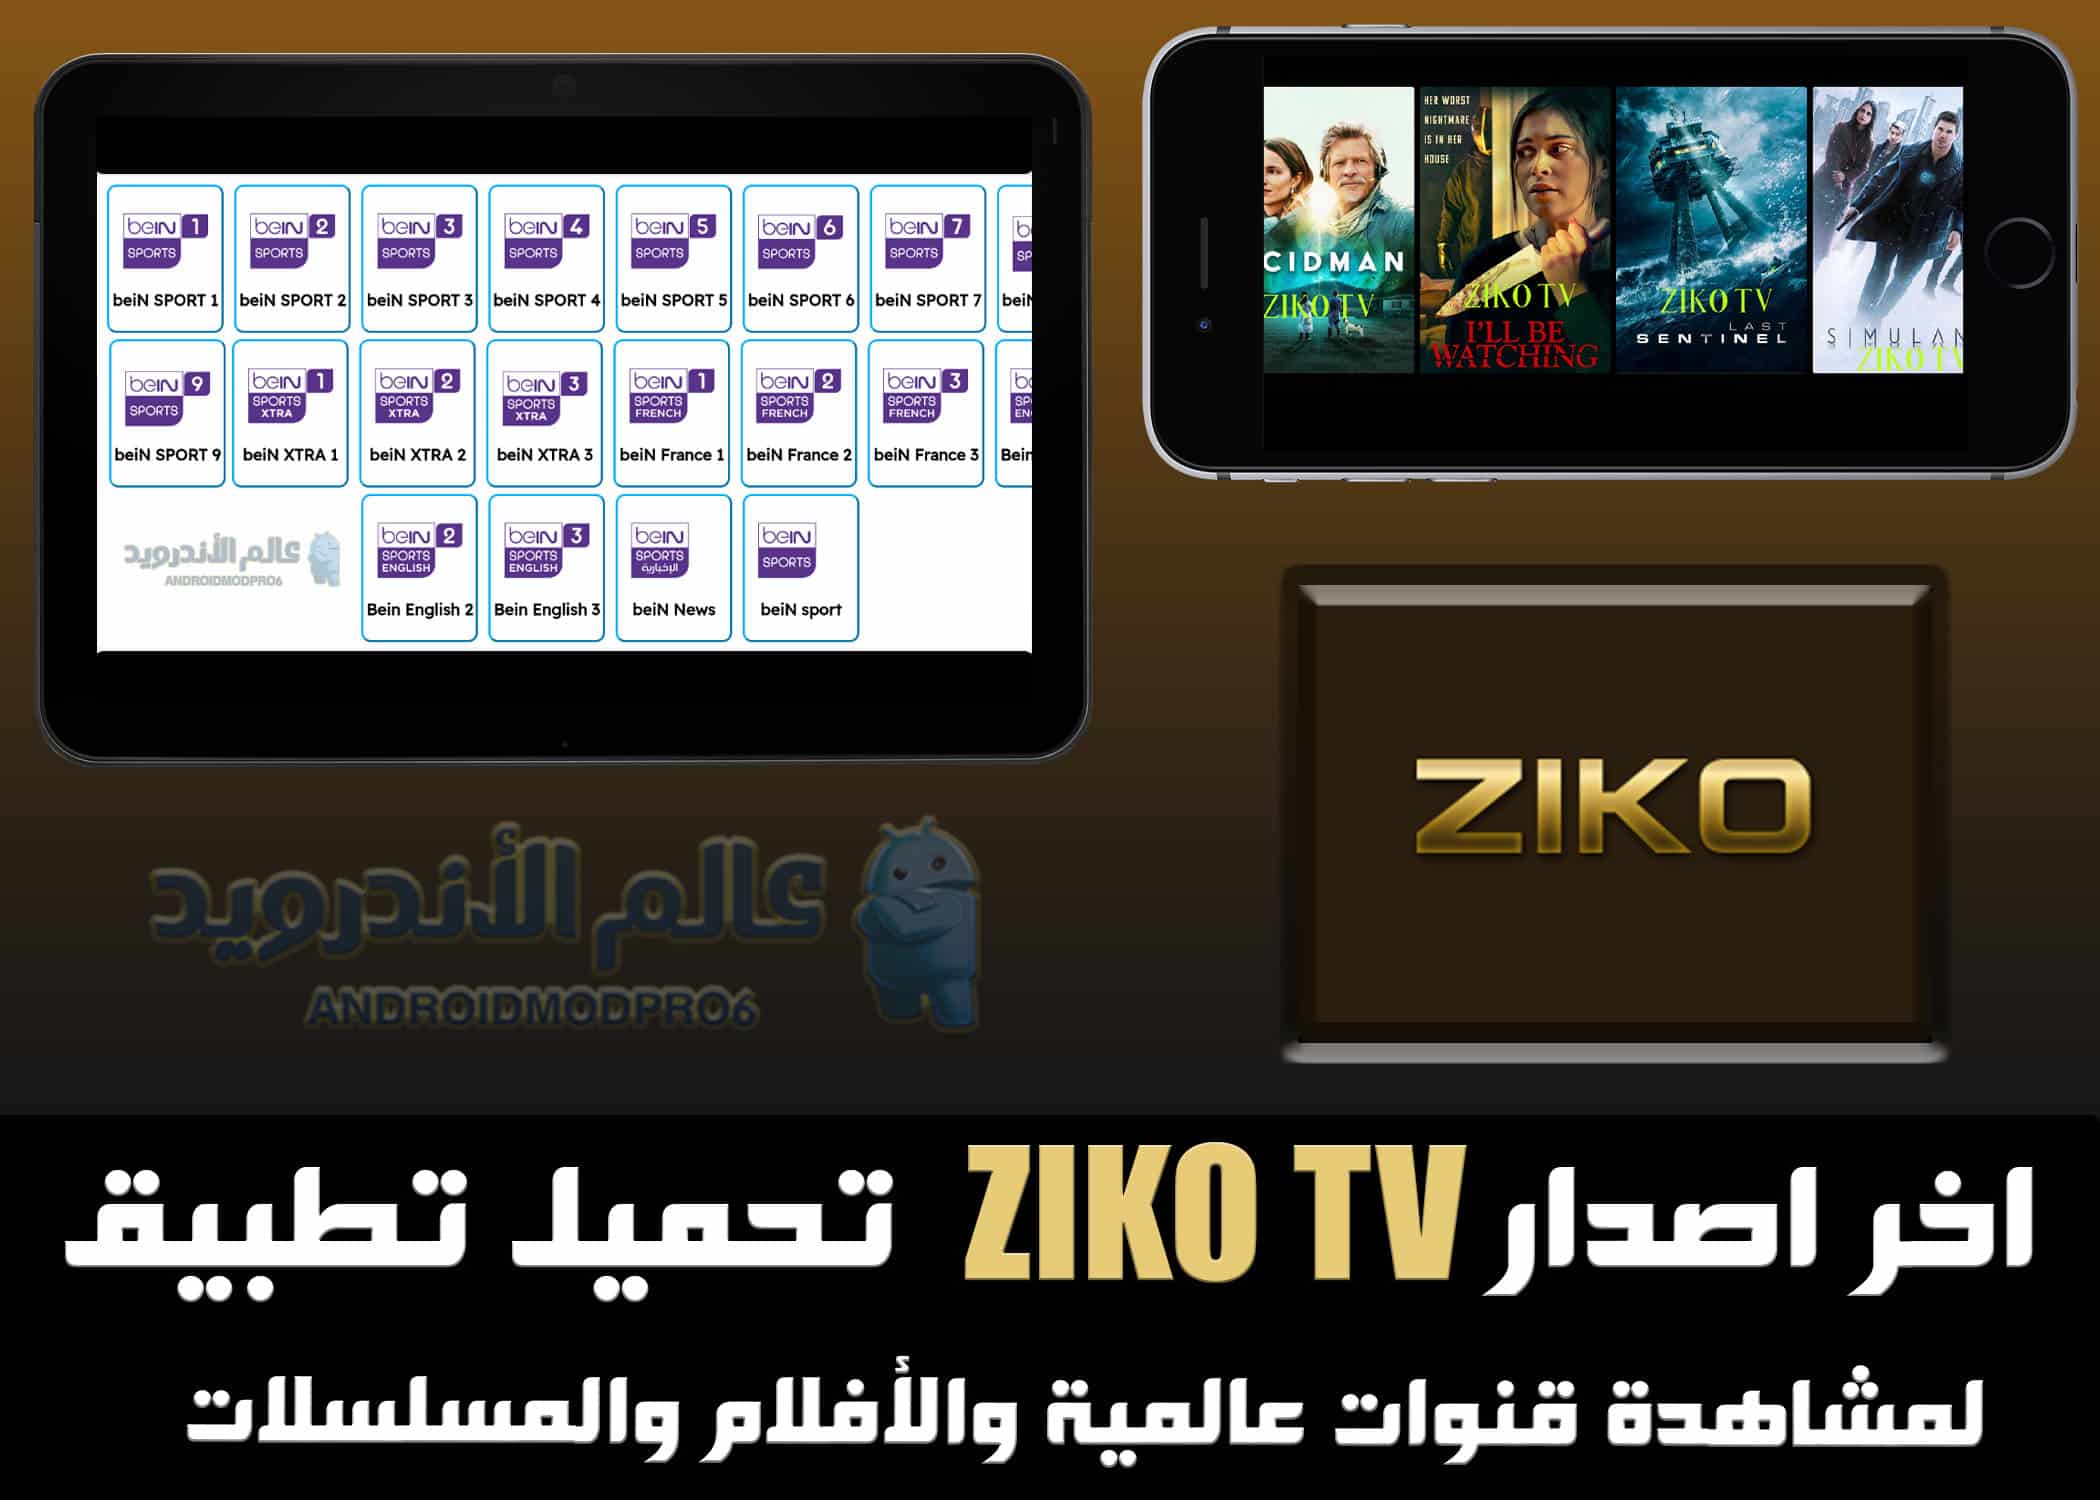 تحميل تطبيق زيكو tv